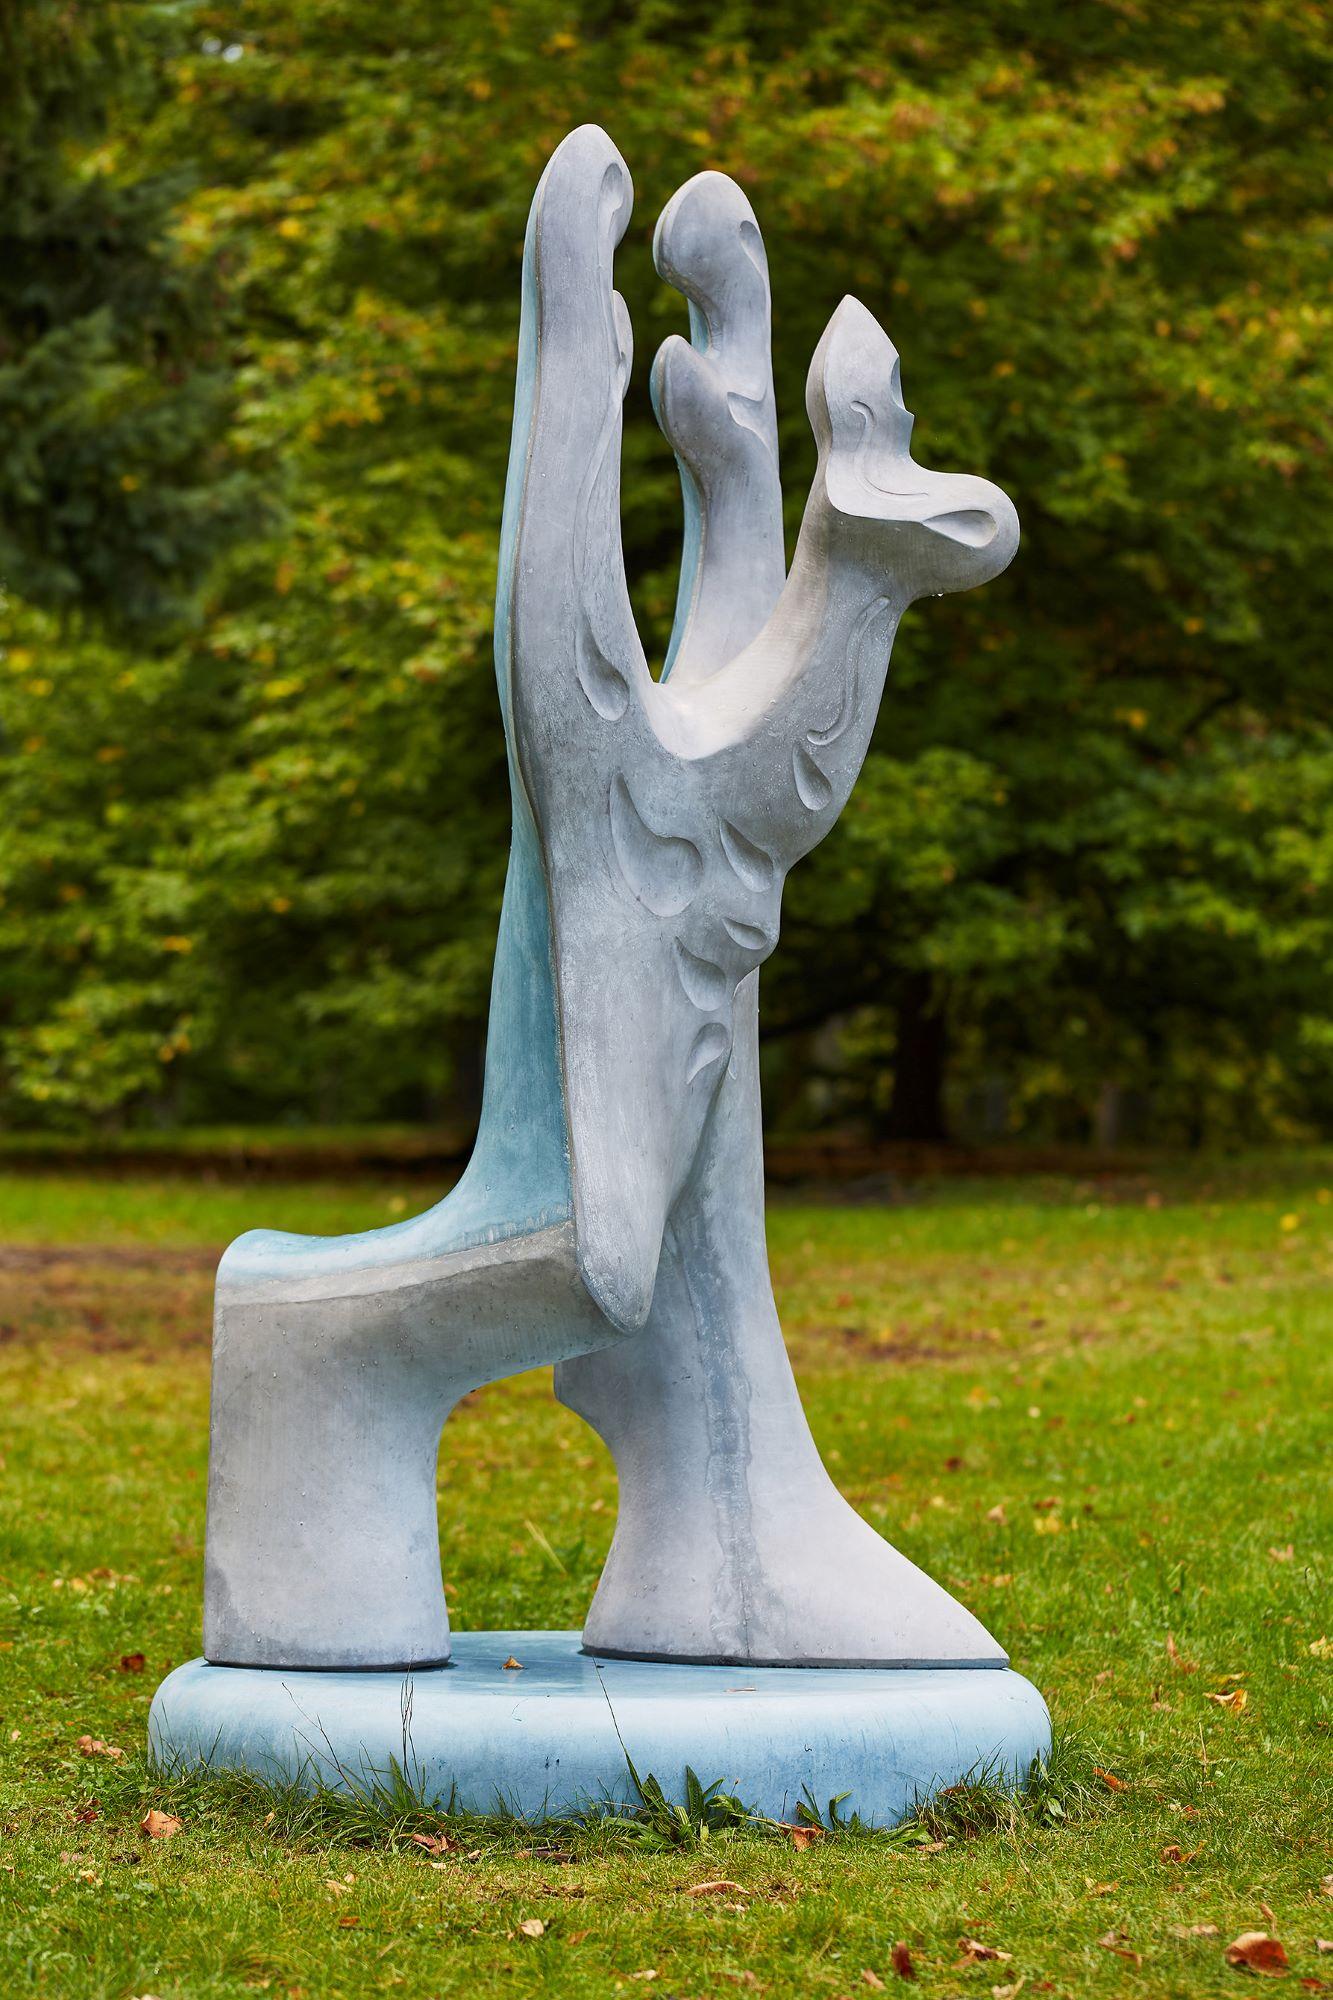 Big Creature by Pavlína Kvita - Contemporary sculpture, futuristic figure, grey For Sale 4